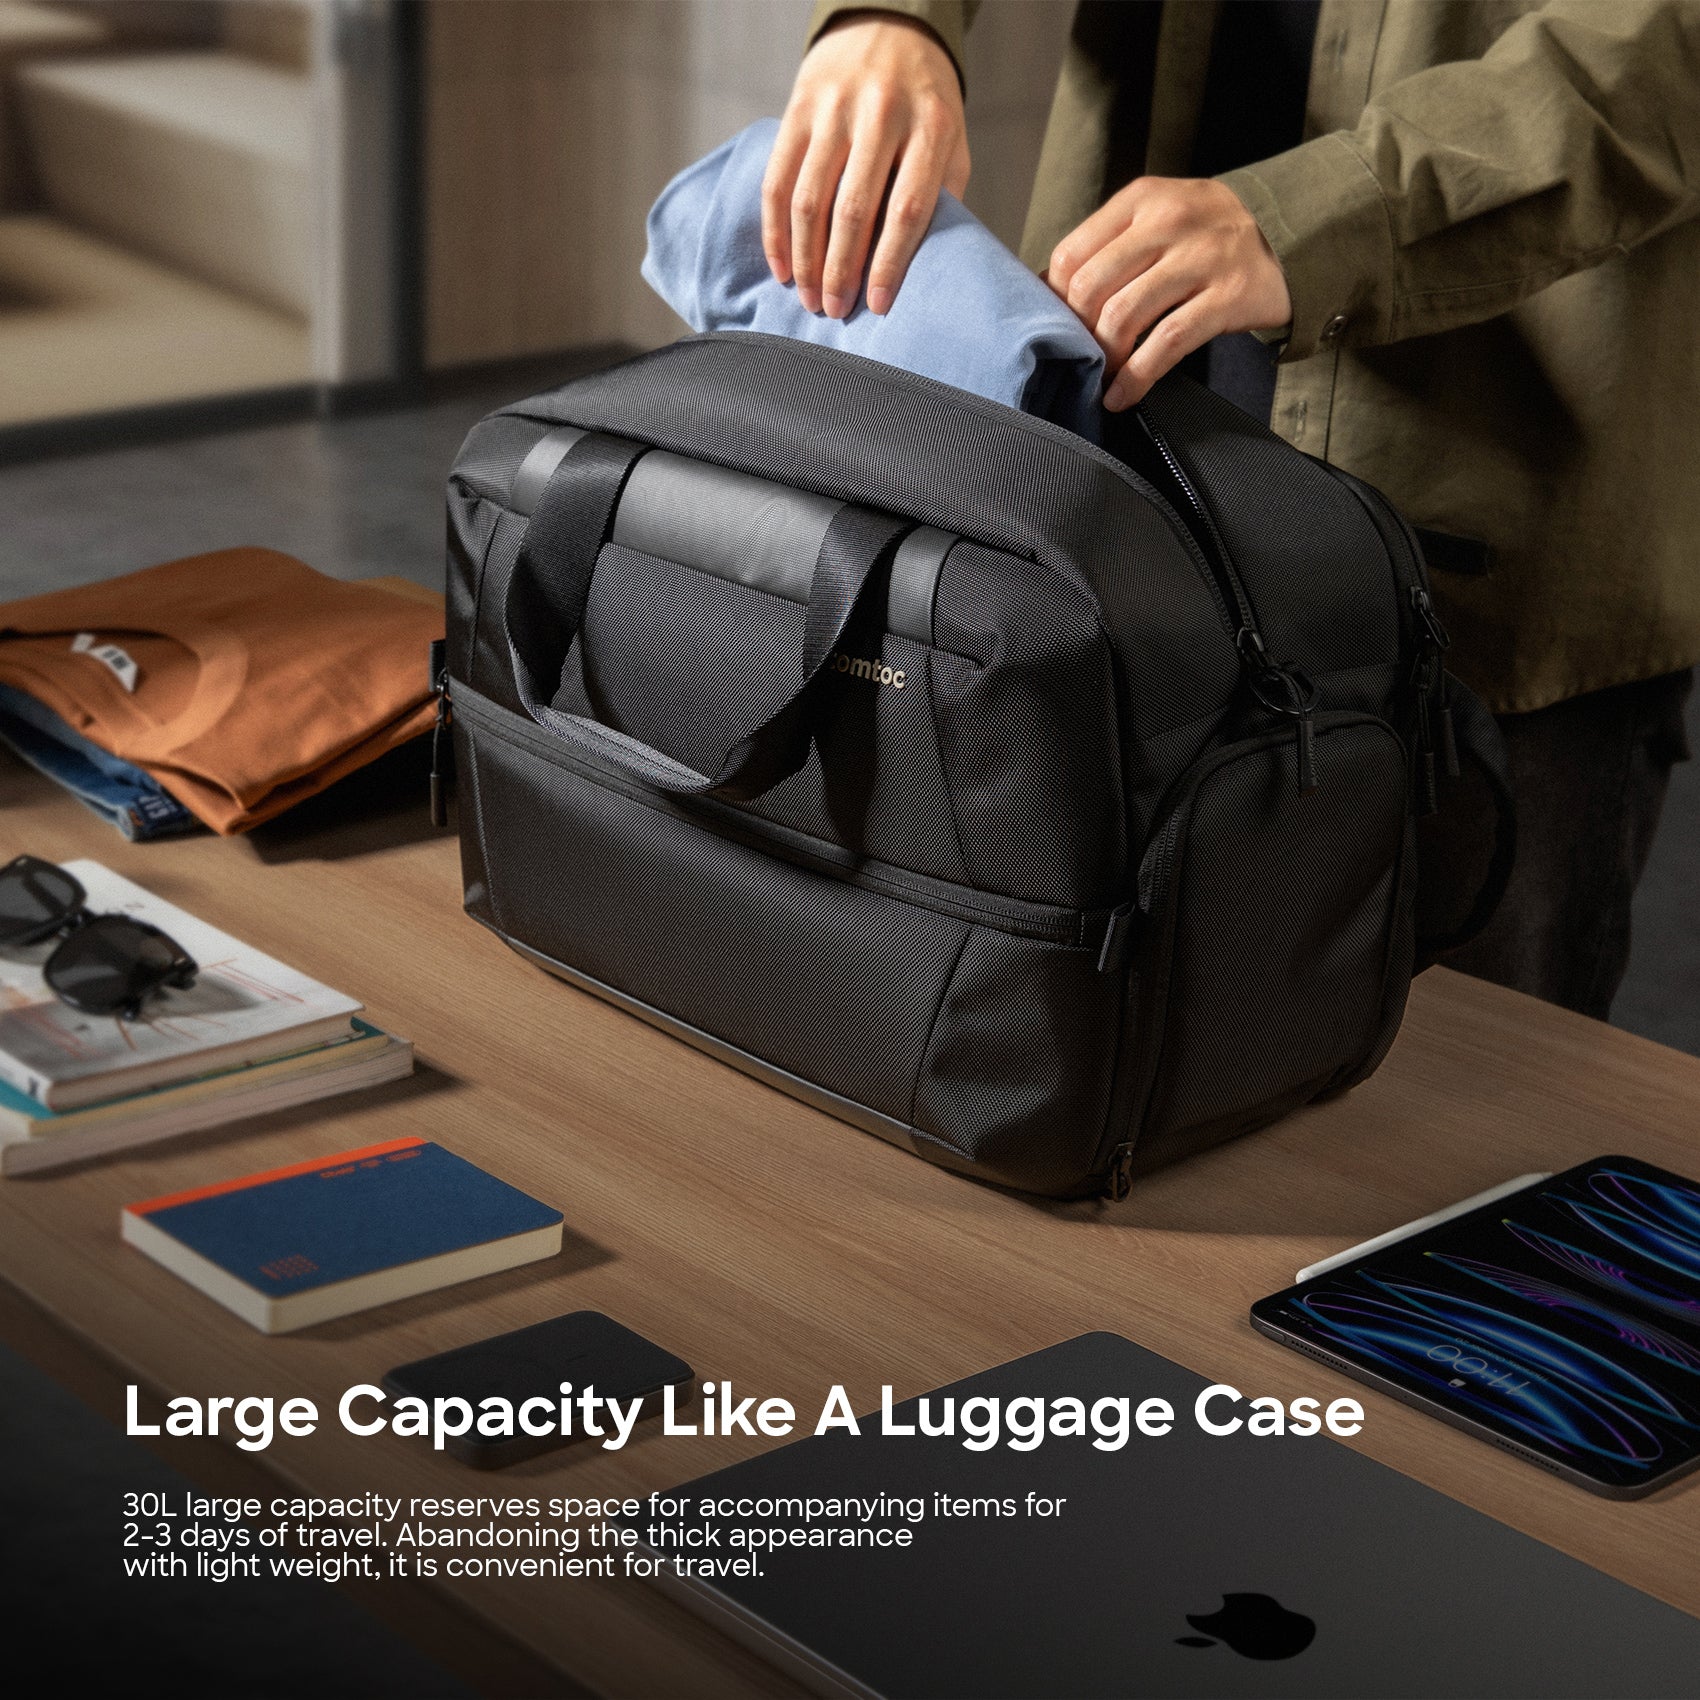 tomtoc 30L Navigator Duffel Bag / Travel Bag / Waterproof Multifunction Bag - Black